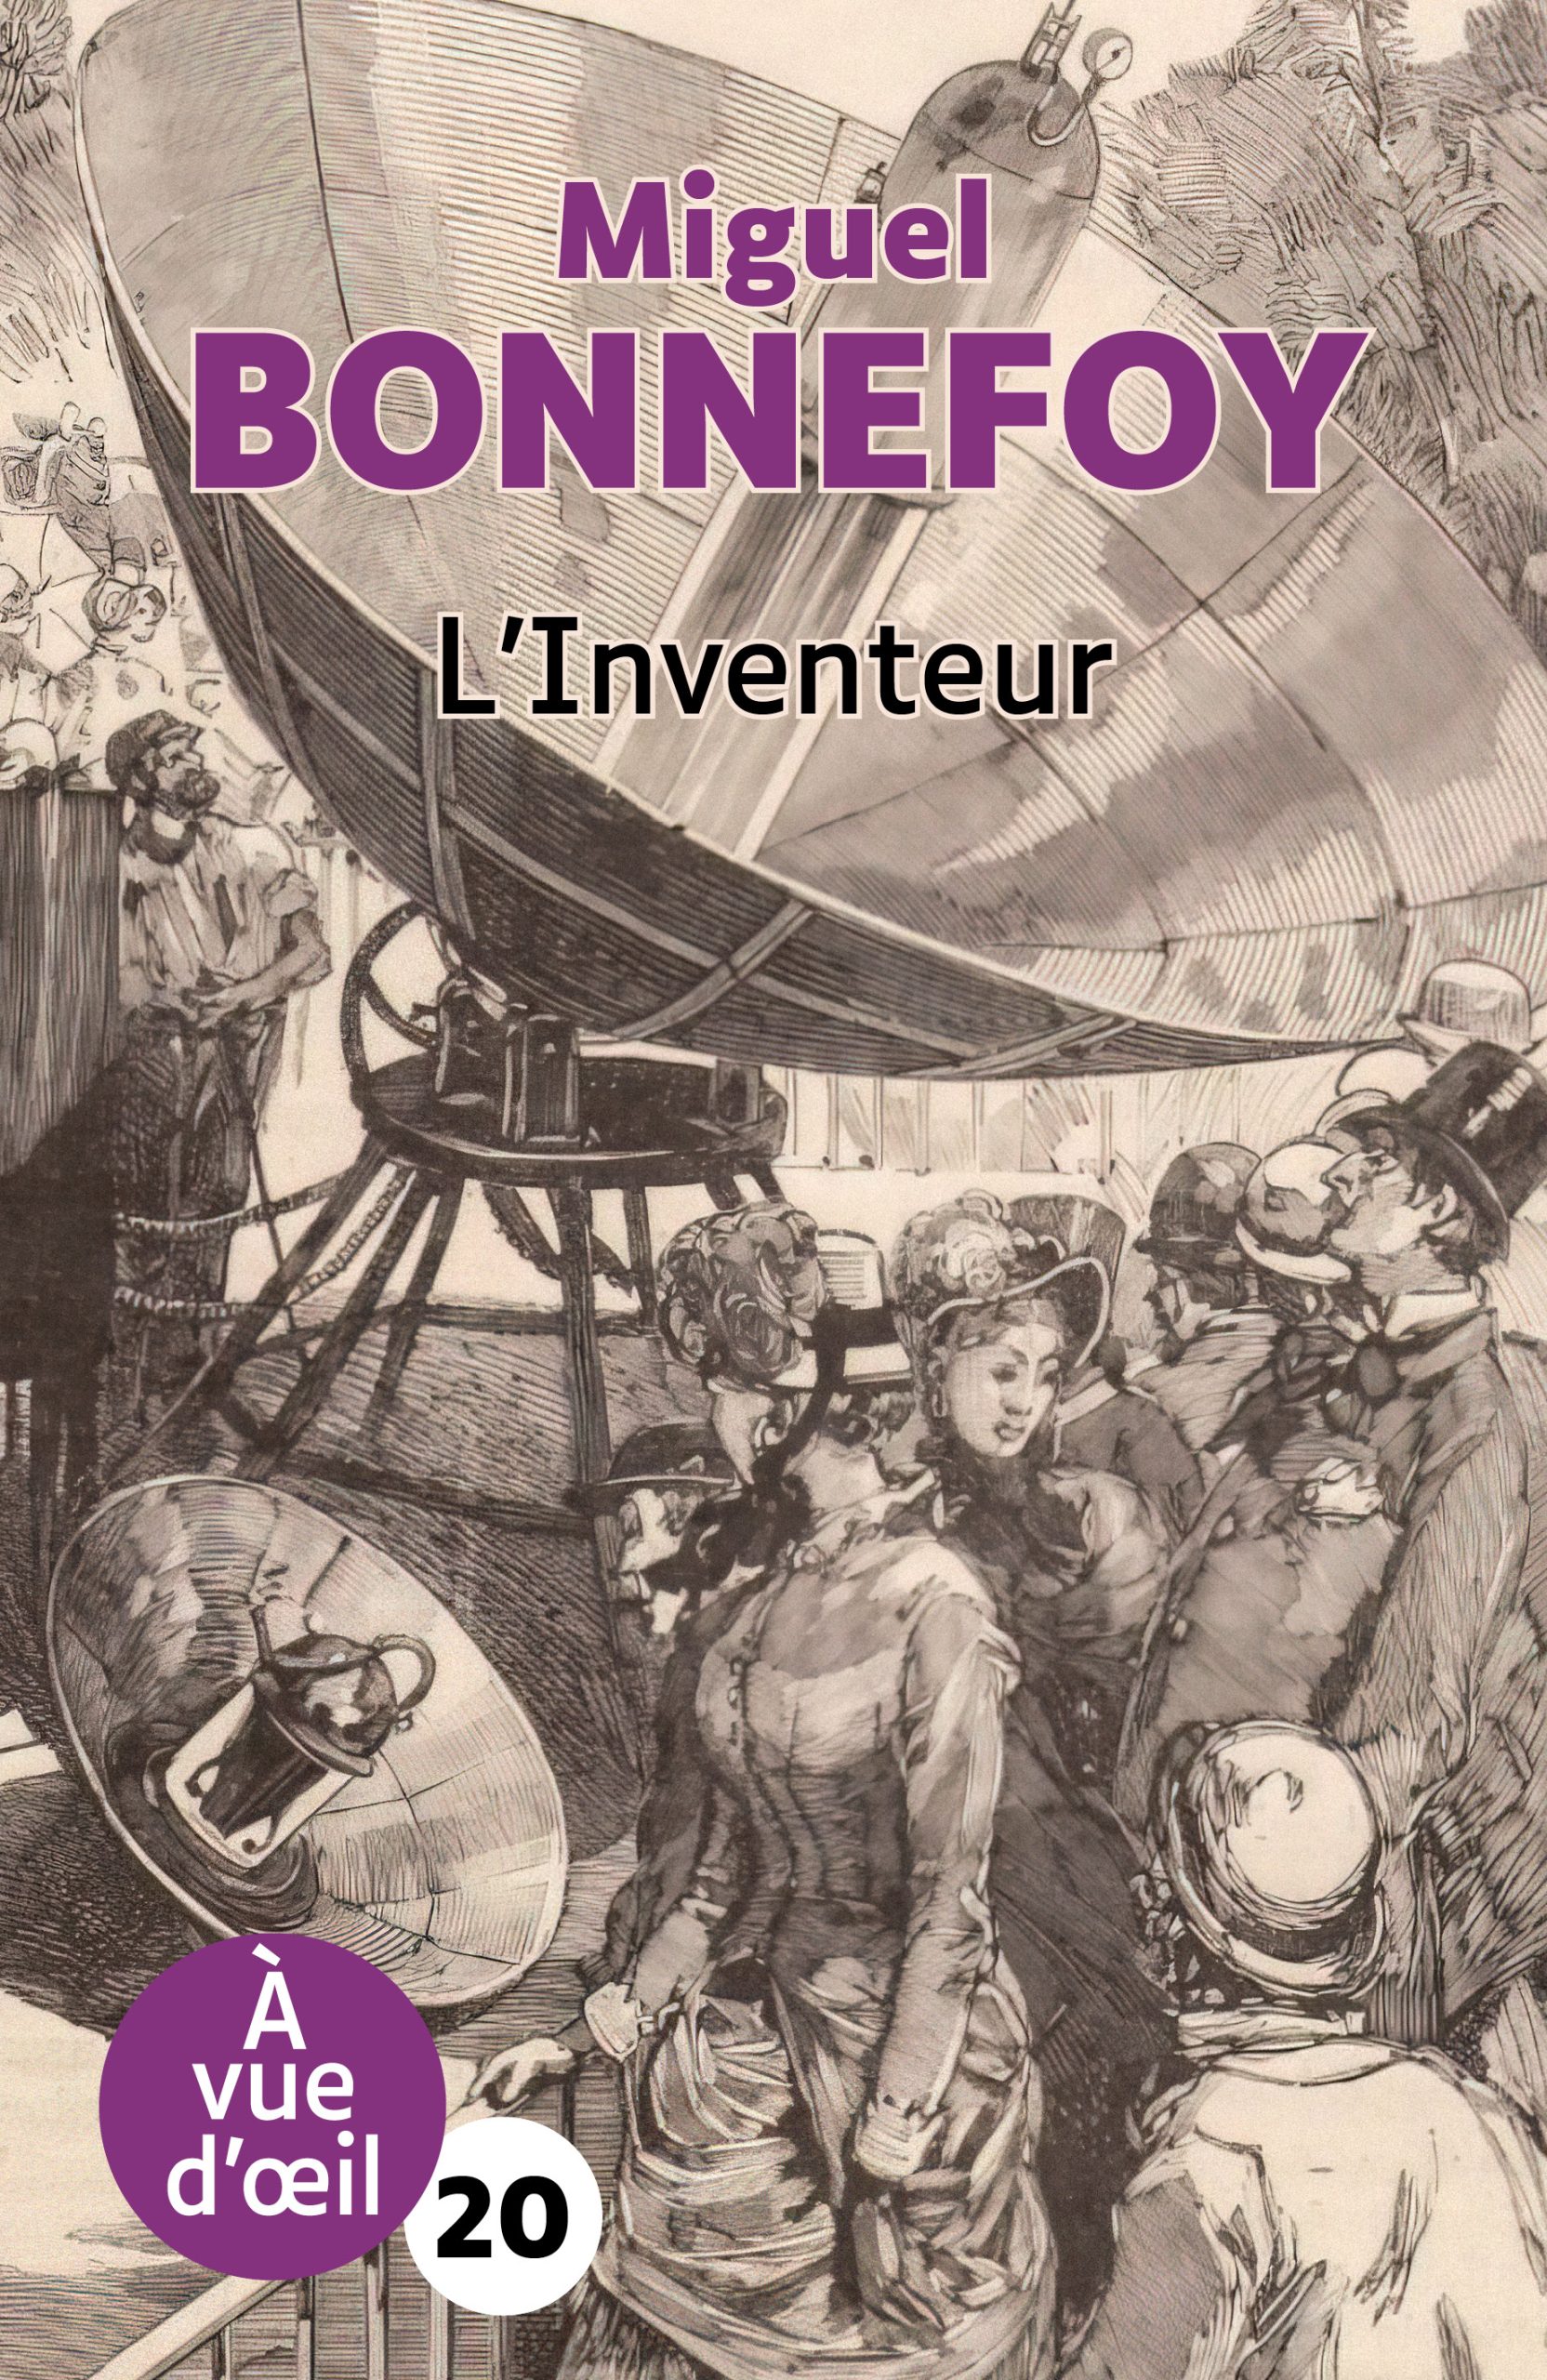 Couverture du livre en grands caractères L'Inventeur de Miguel Bonnefoy